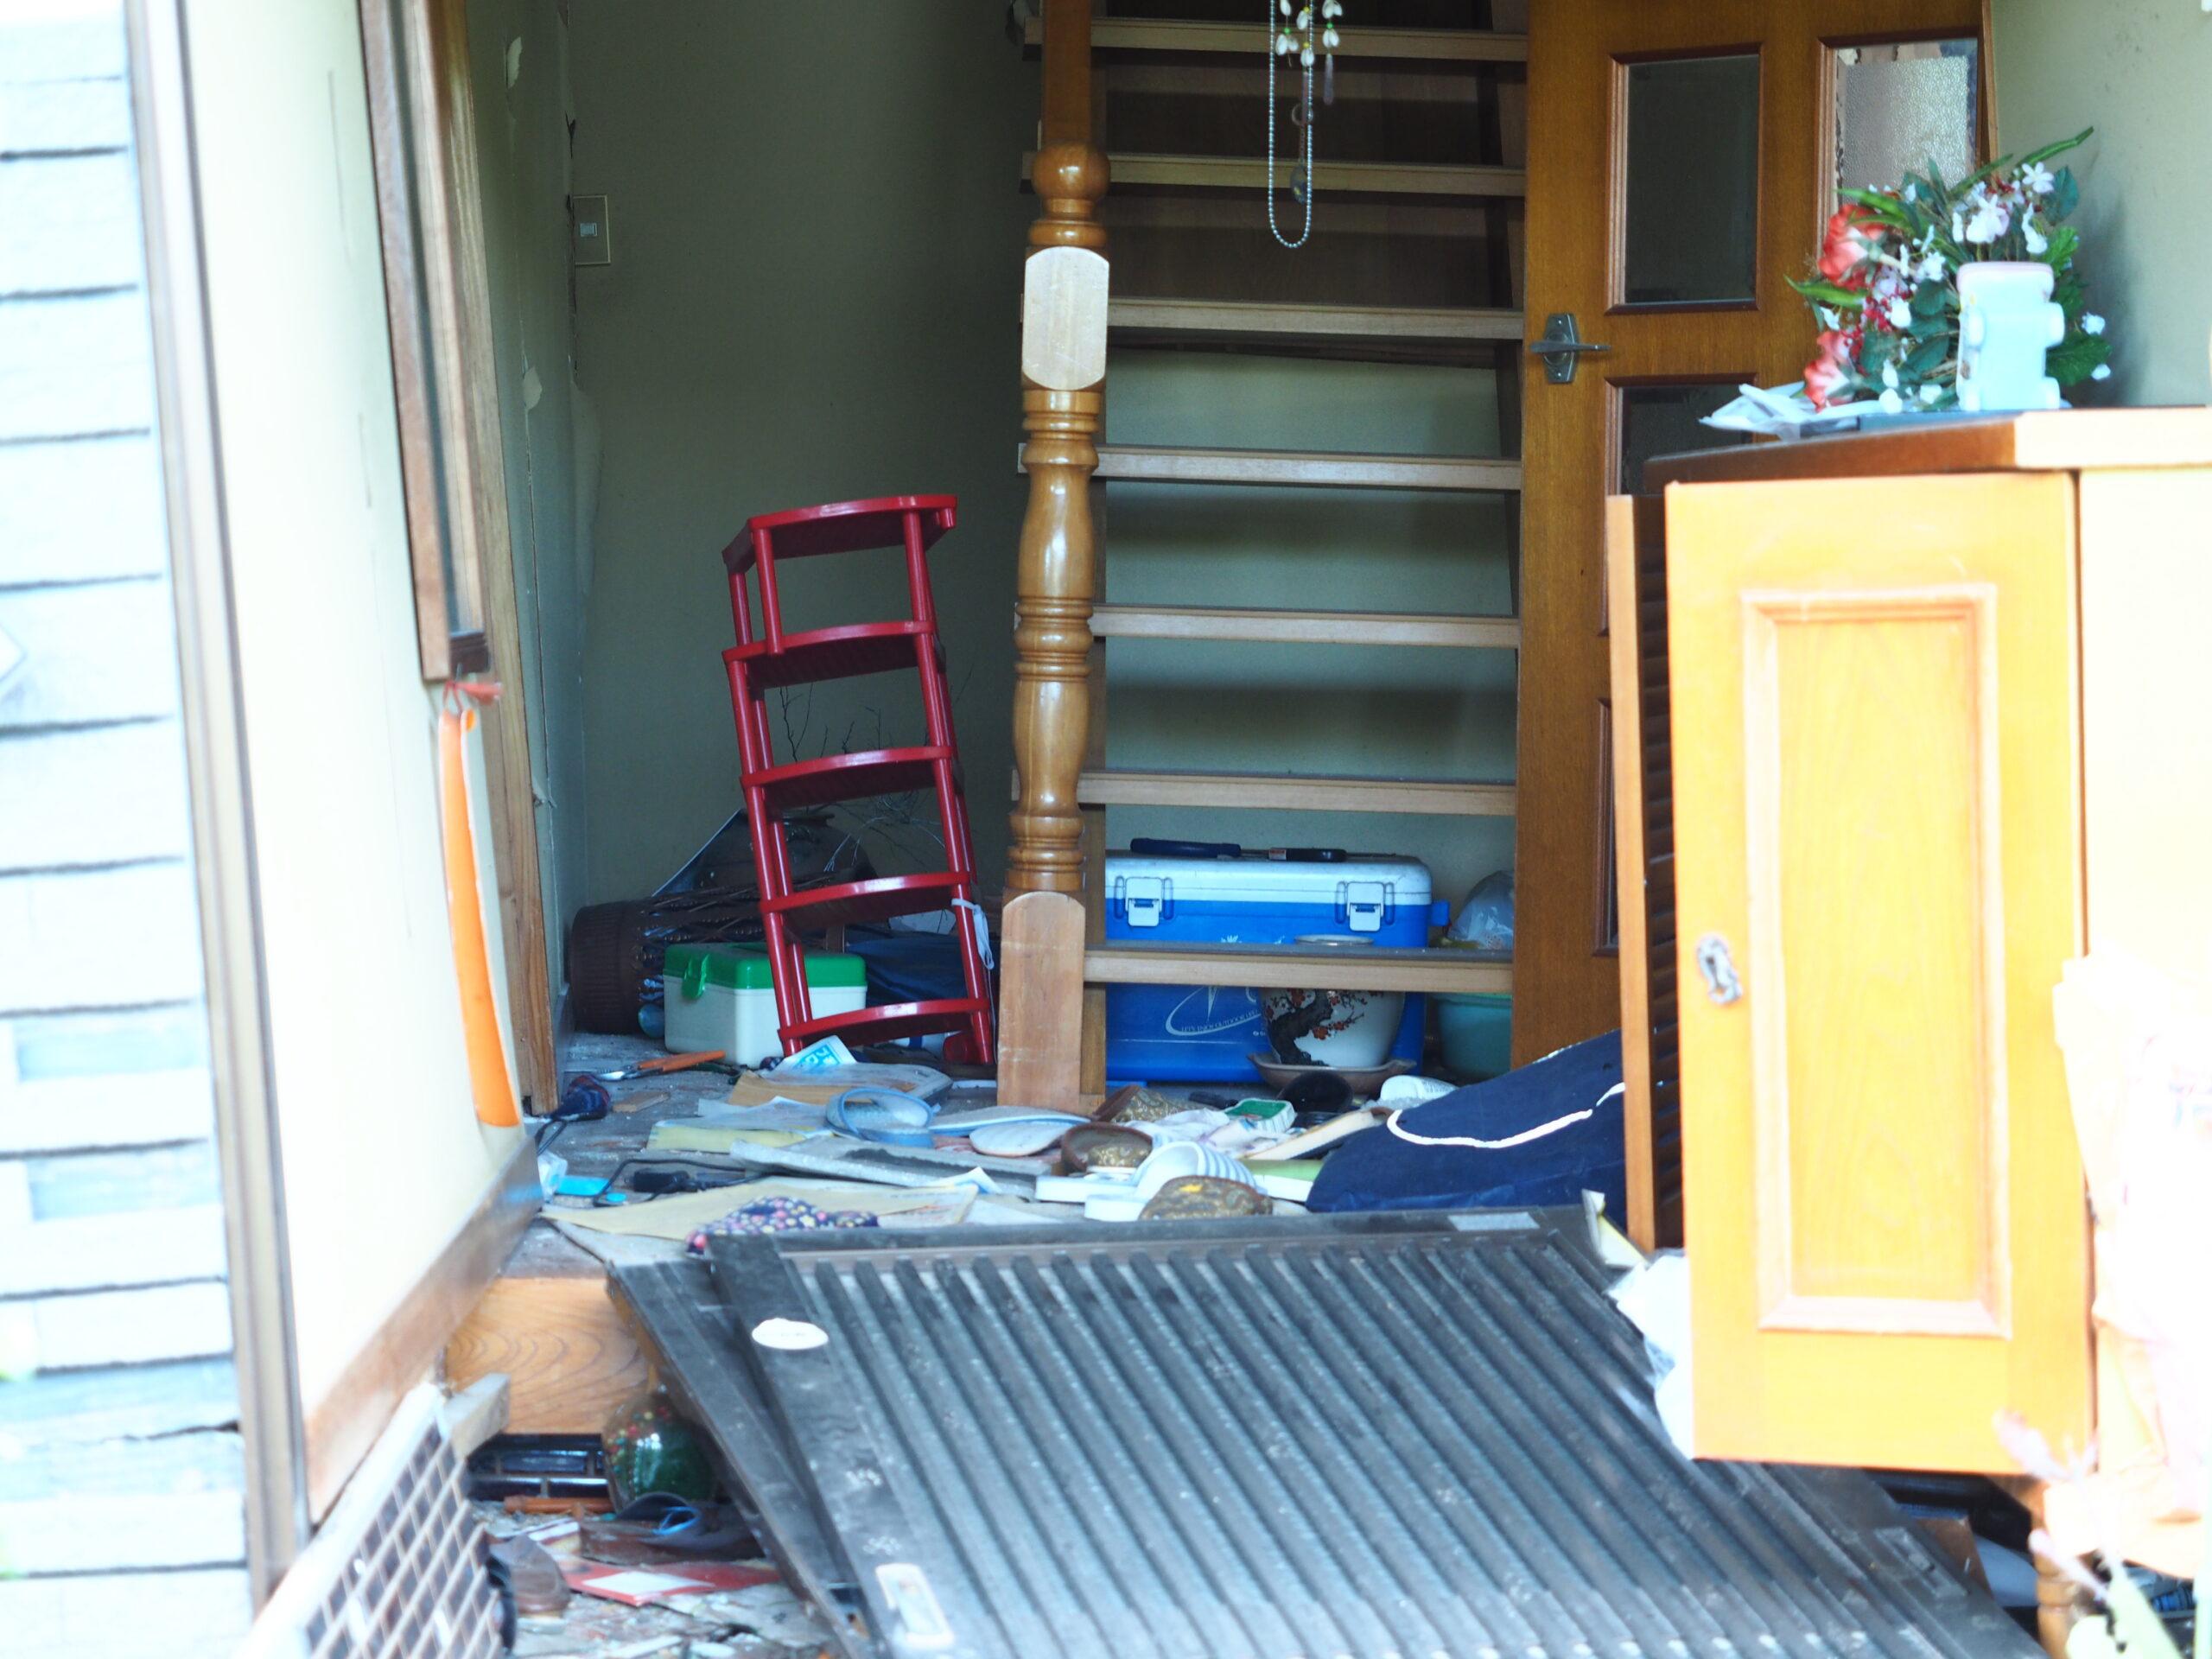 熊本地震で住宅の玄関が荷物で散乱している状況